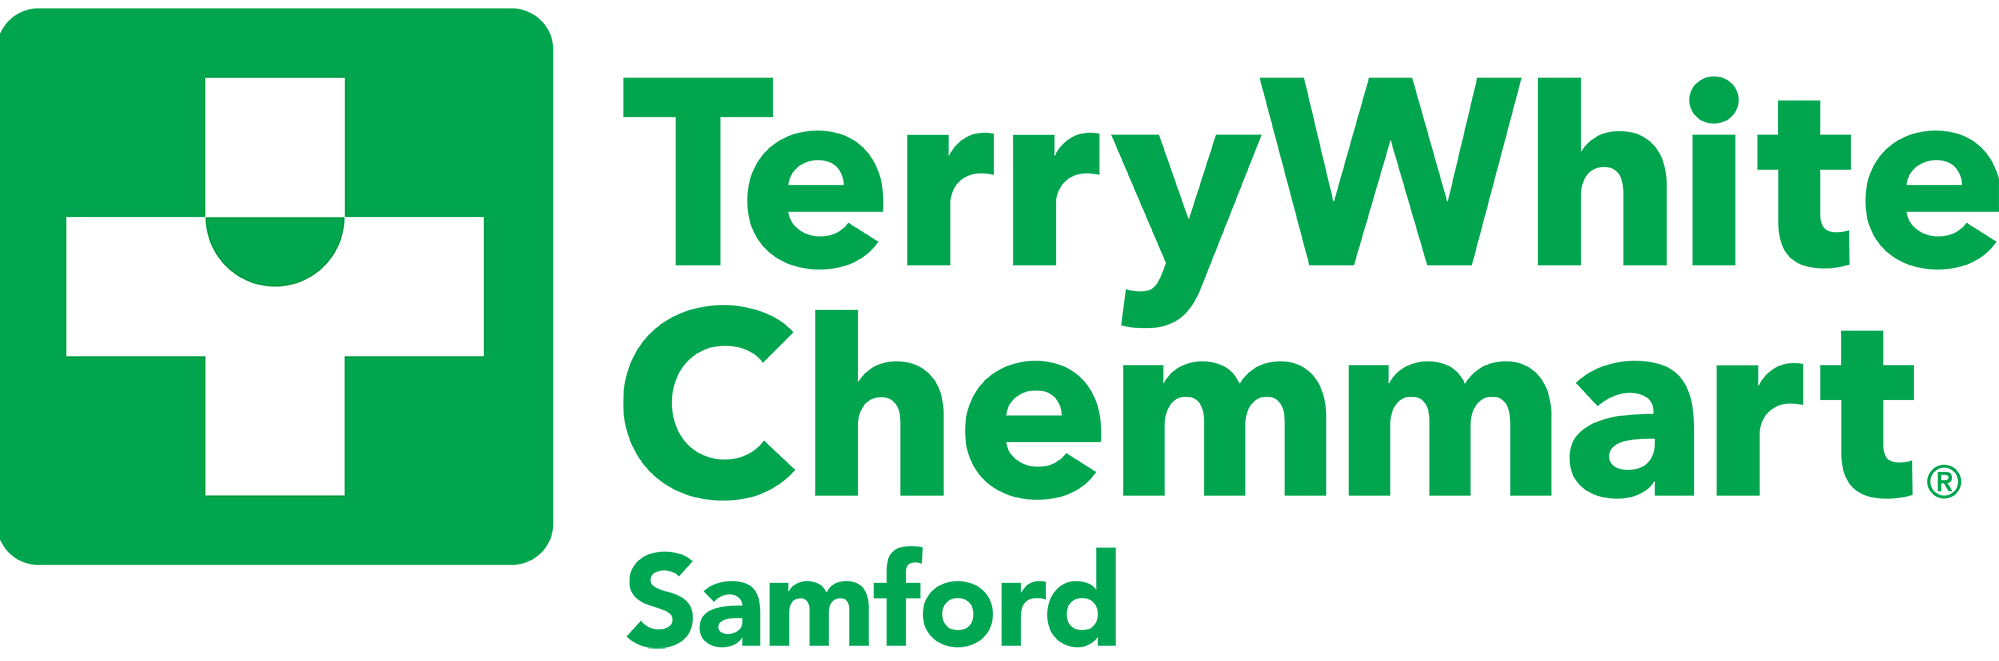 Samford TerryWhite Chemmart